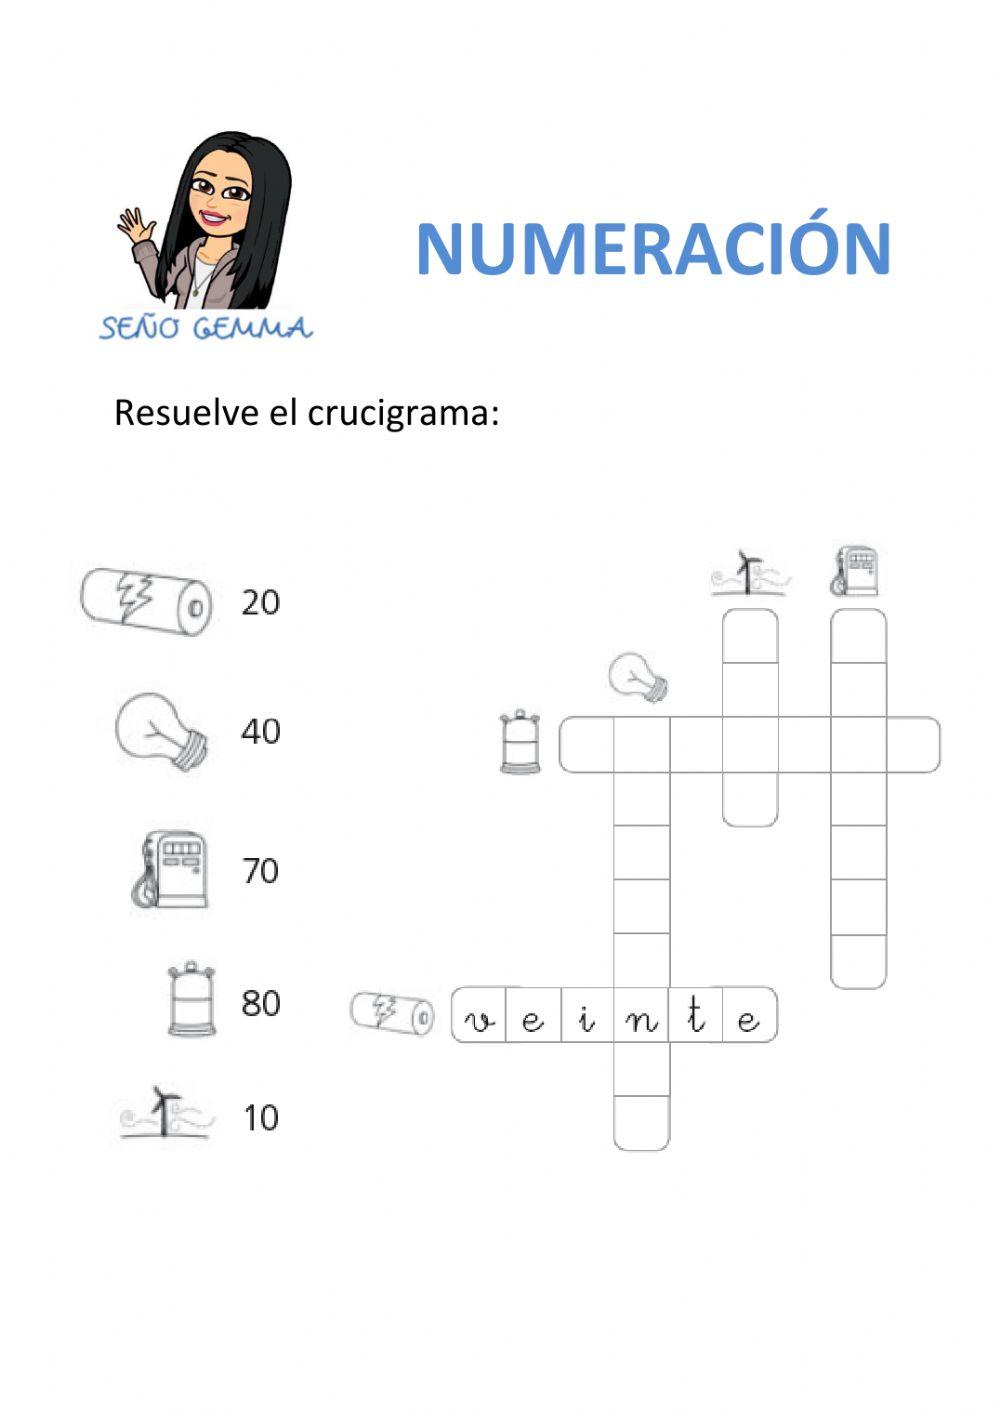 Crucigrama - numeración